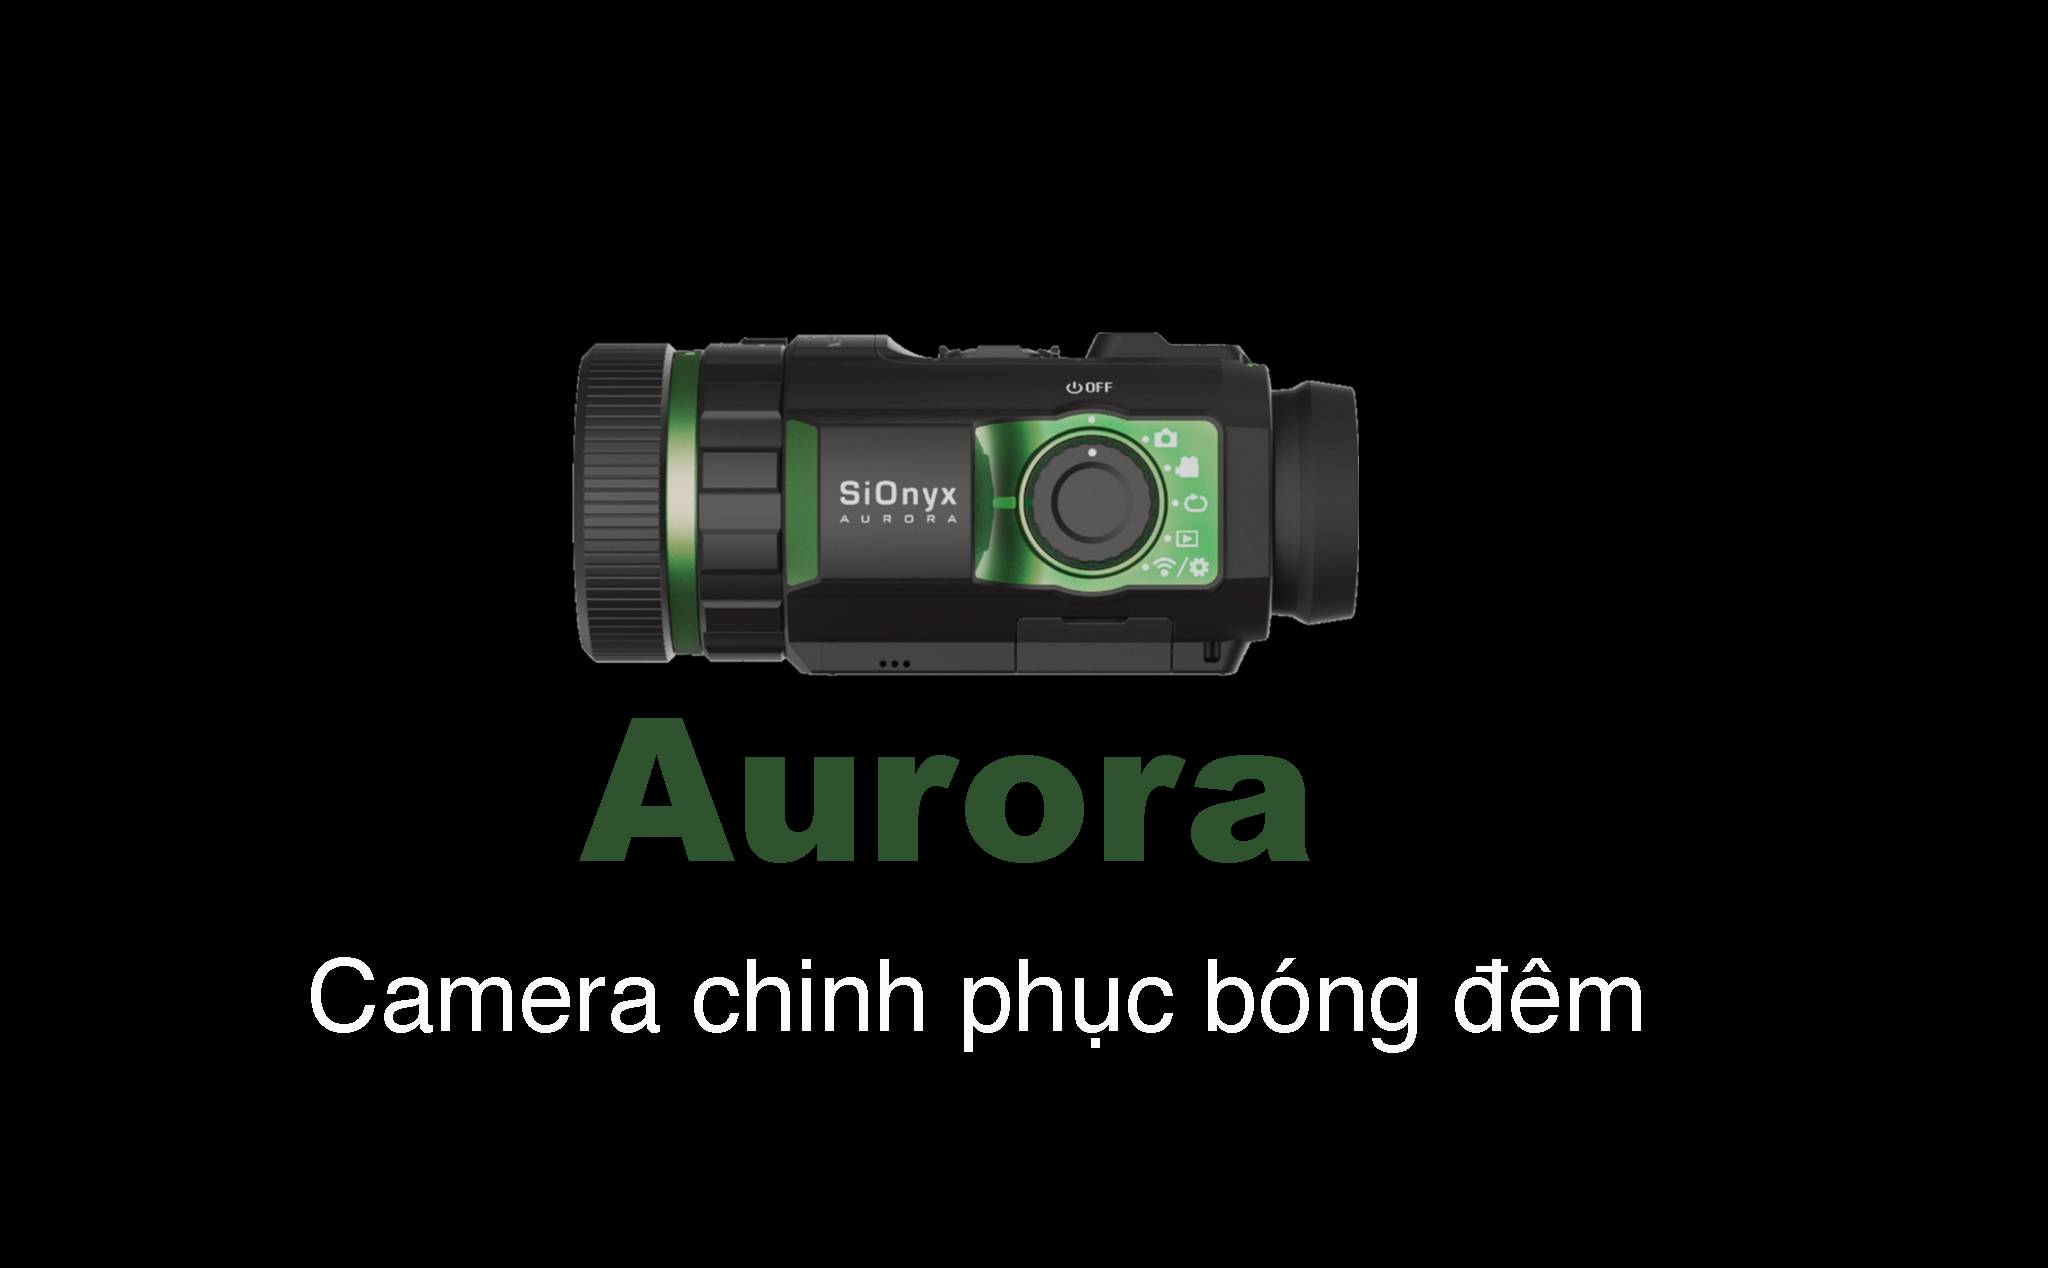 Aurora - "Camera chinh phục bóng tối" với đầy đủ màu sắc được ra mắt với giá xấp xỉ 17 triệu đồng